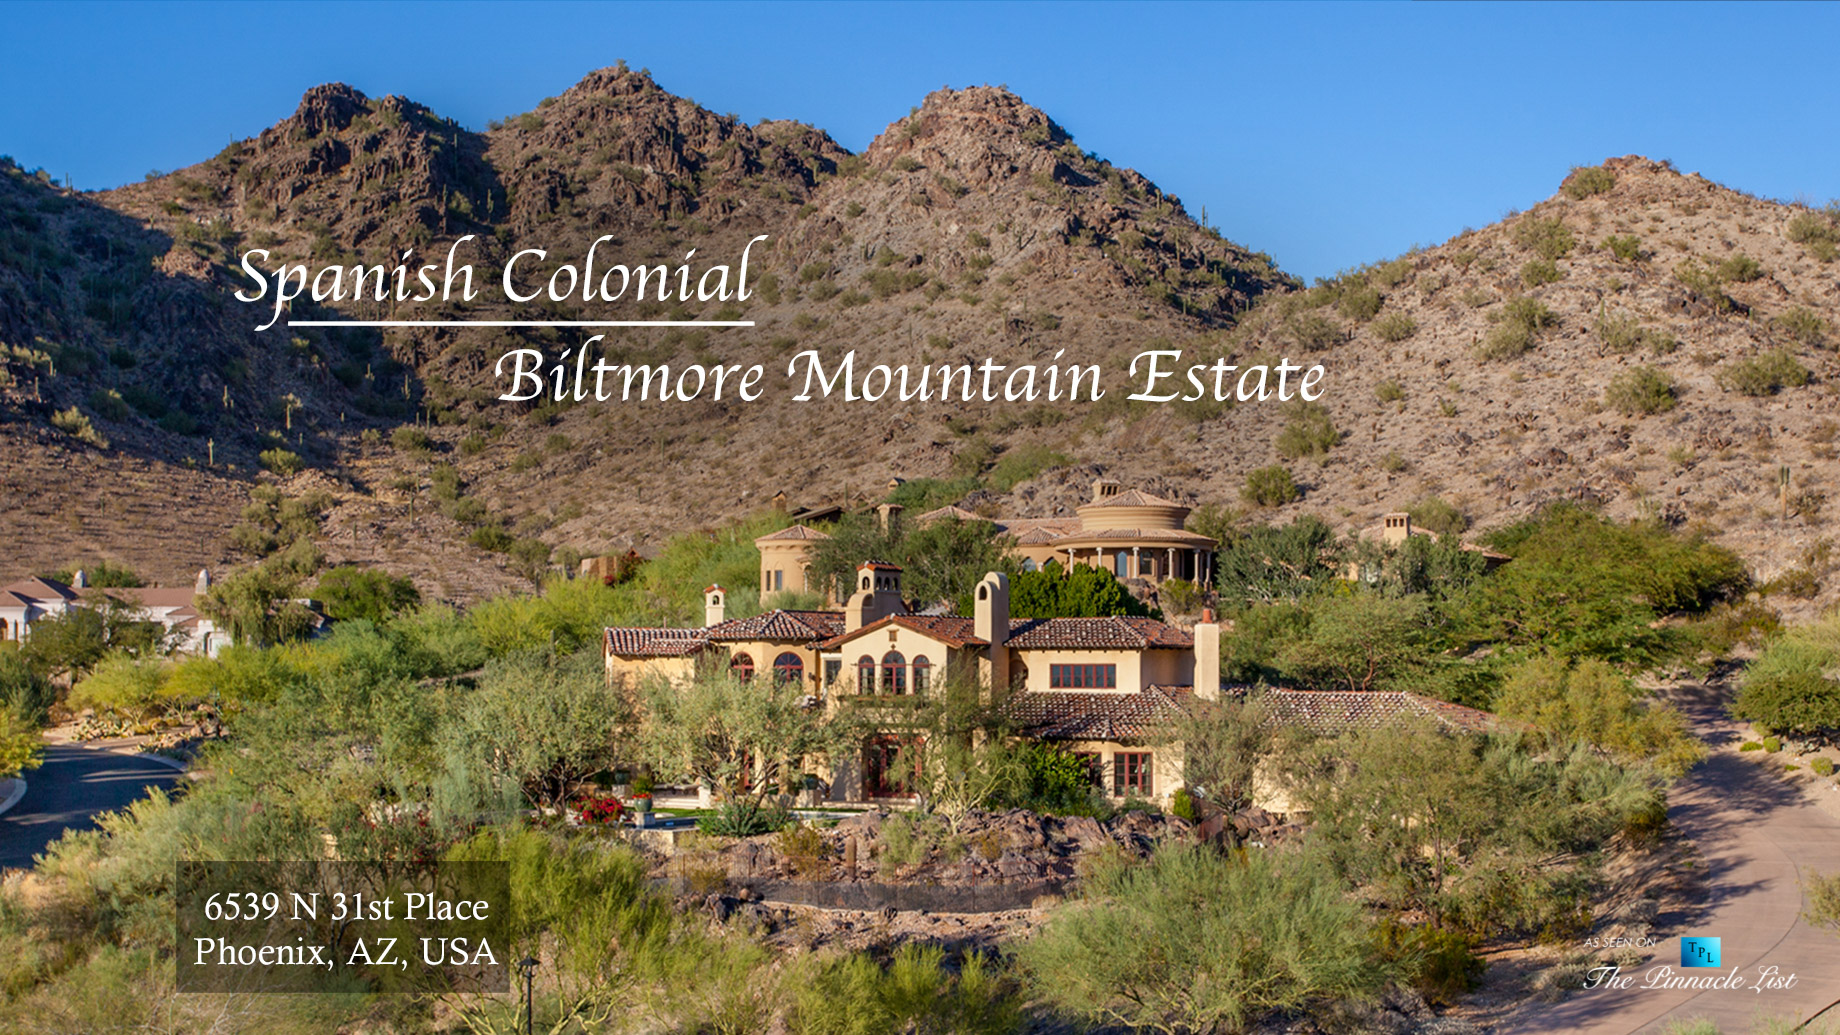 Spanish Colonial Biltmore Mountain Estate - 6539 N 31st Pl, Phoenix, AZ, USA